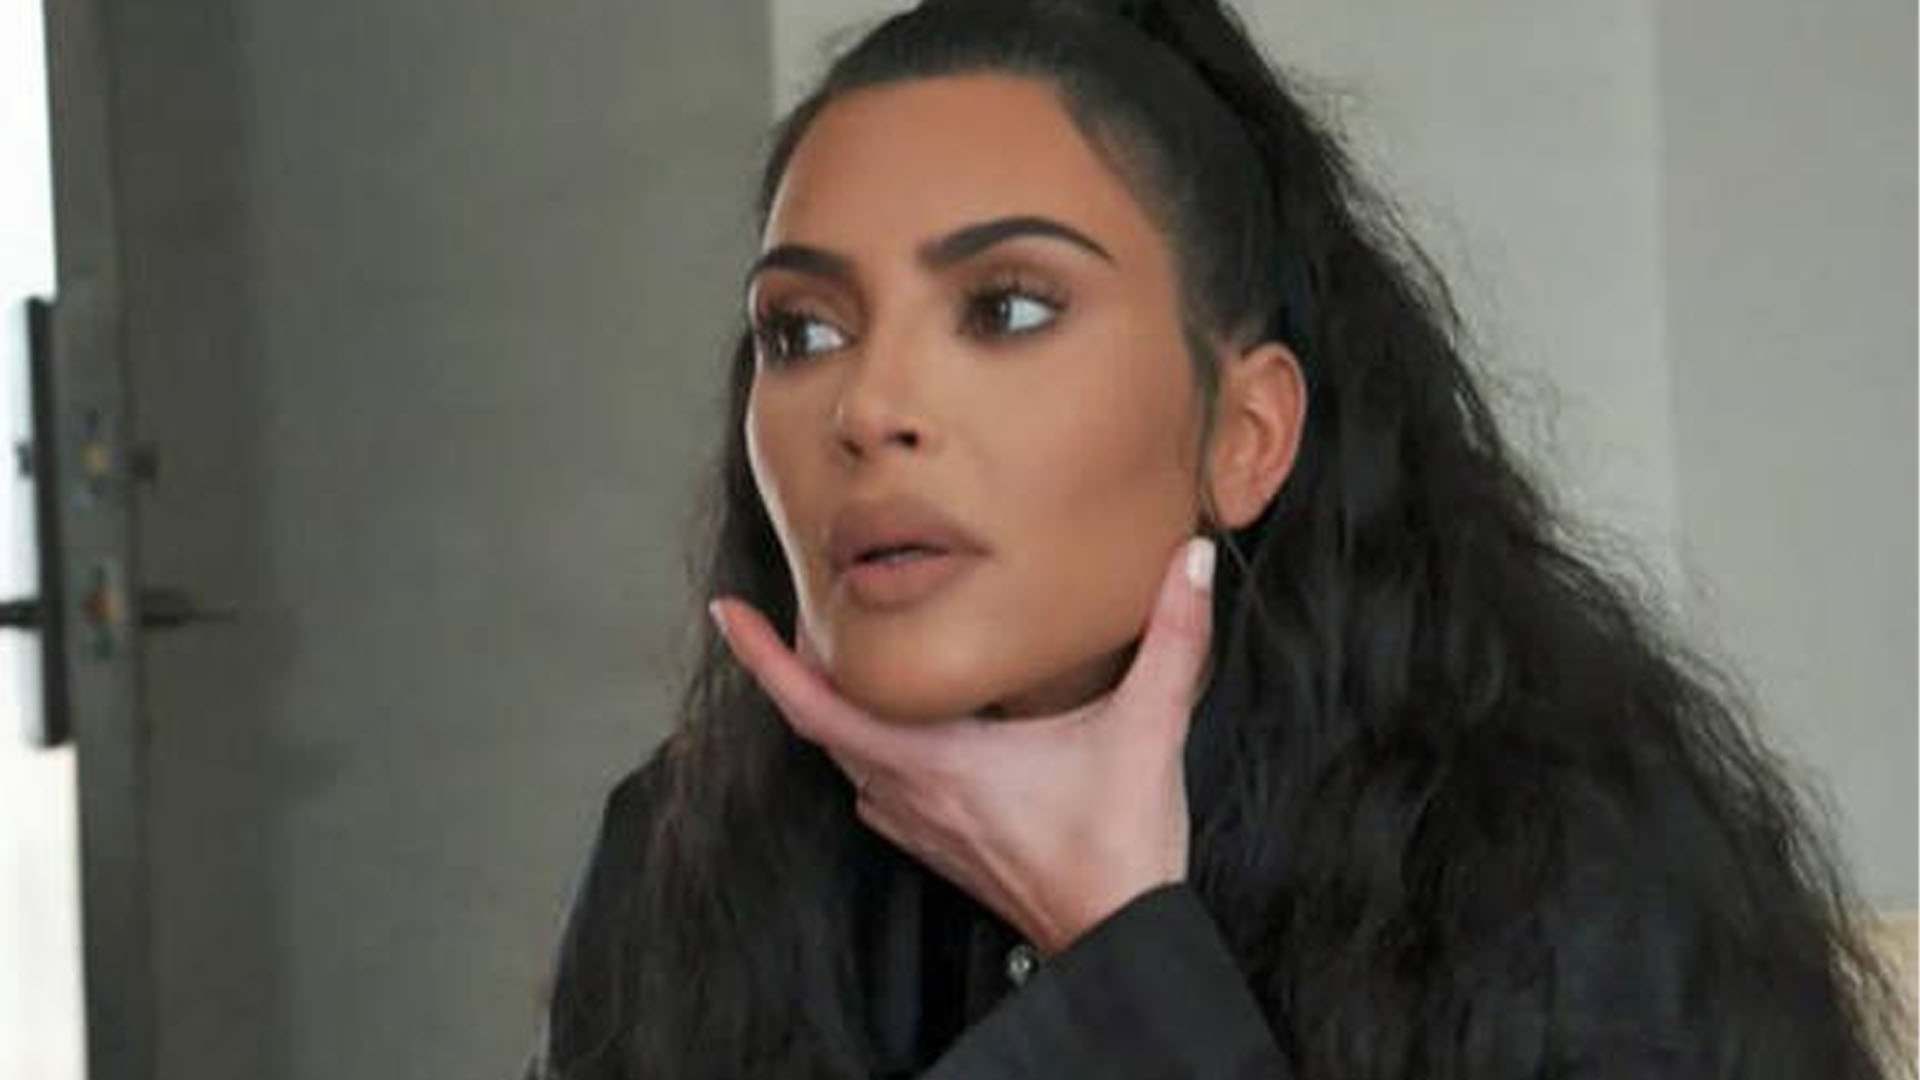 L'obra d'art, fake? de la filla de Kim Kardashian que enfada a les xarxes socials